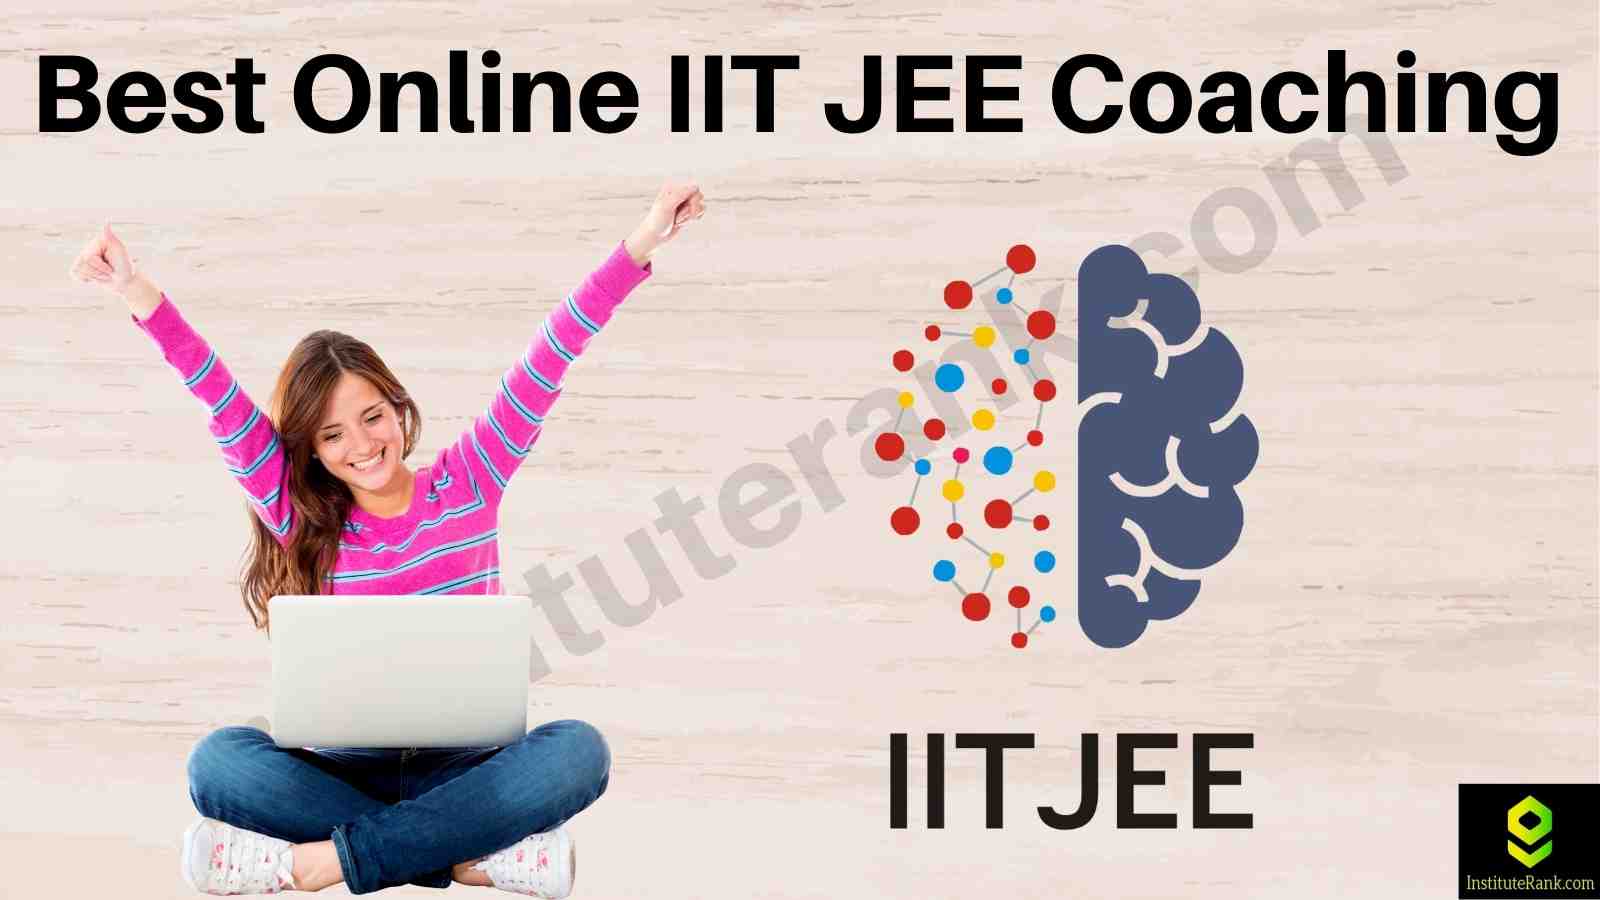 Best 10 Online IIT JEE coaching Institutes 